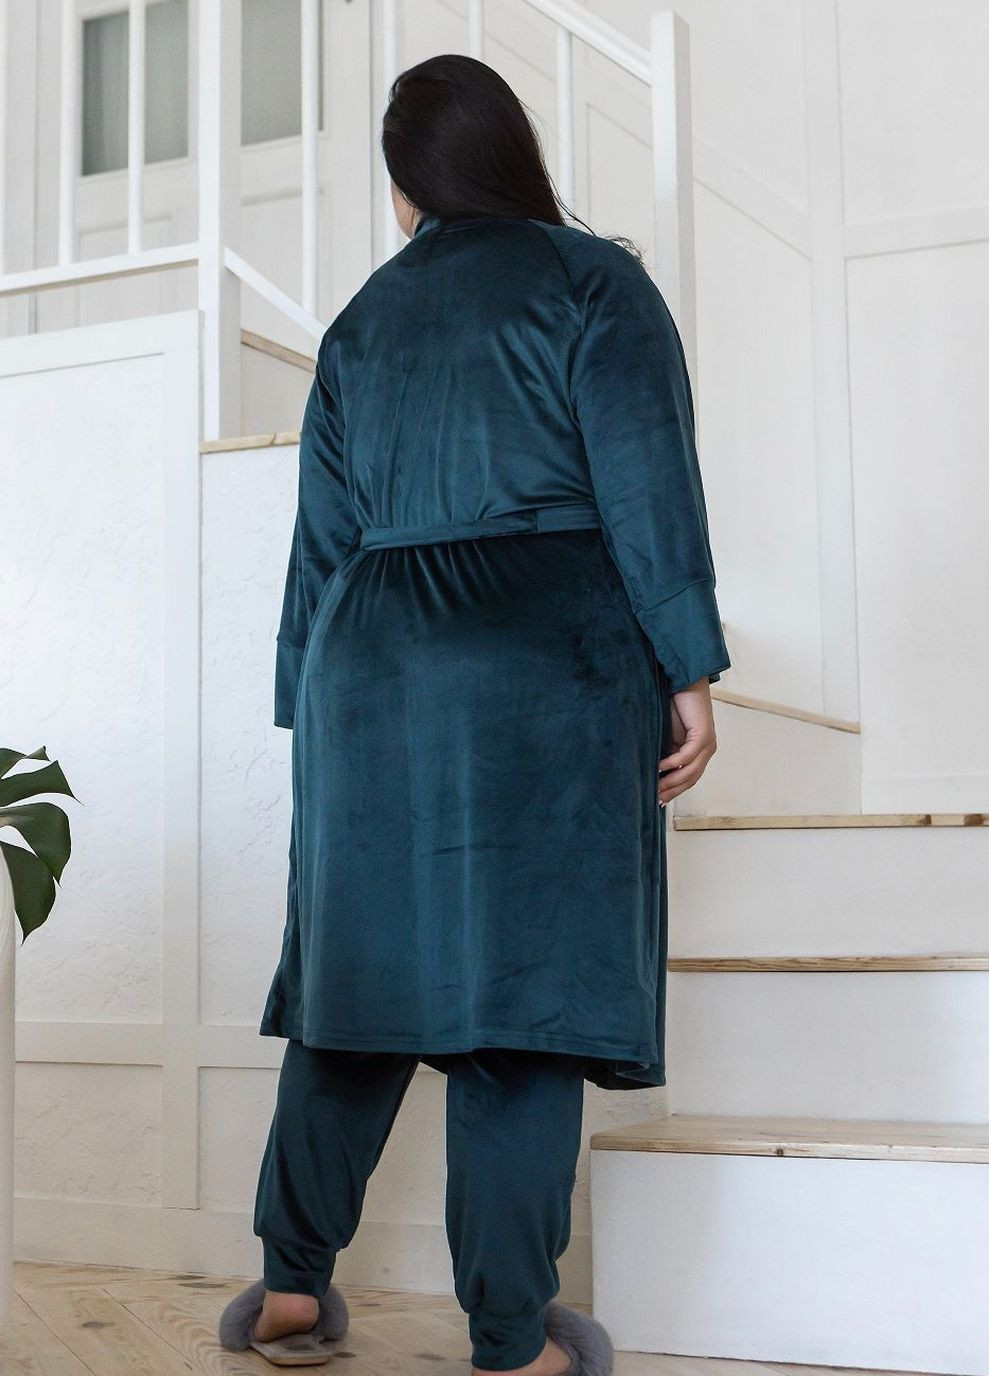 Комплект пижама велюровая с халатом Кб1580 Темно-зеленый MiaNaGreen (267315451)